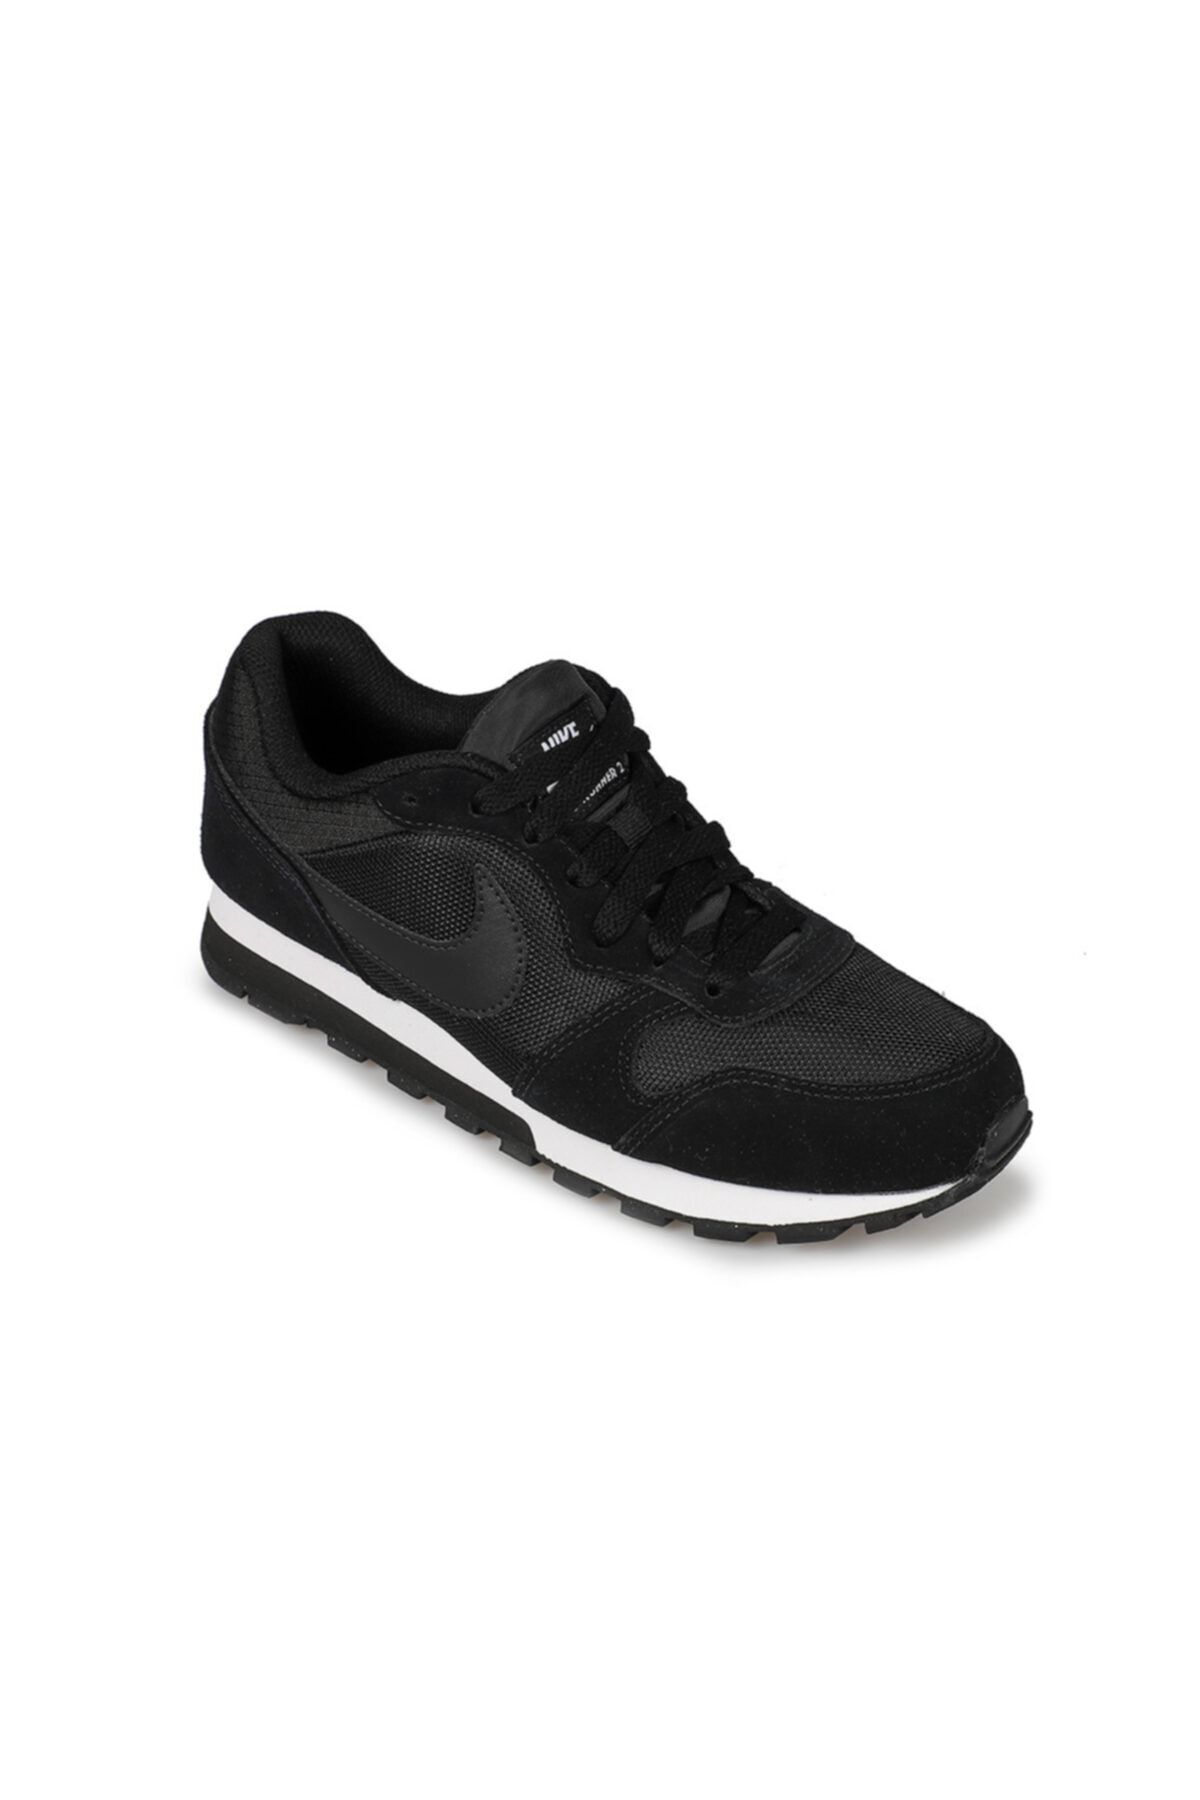 Nike Md Runner 2 Kadın Koşu Ayakkabısı 749869-001